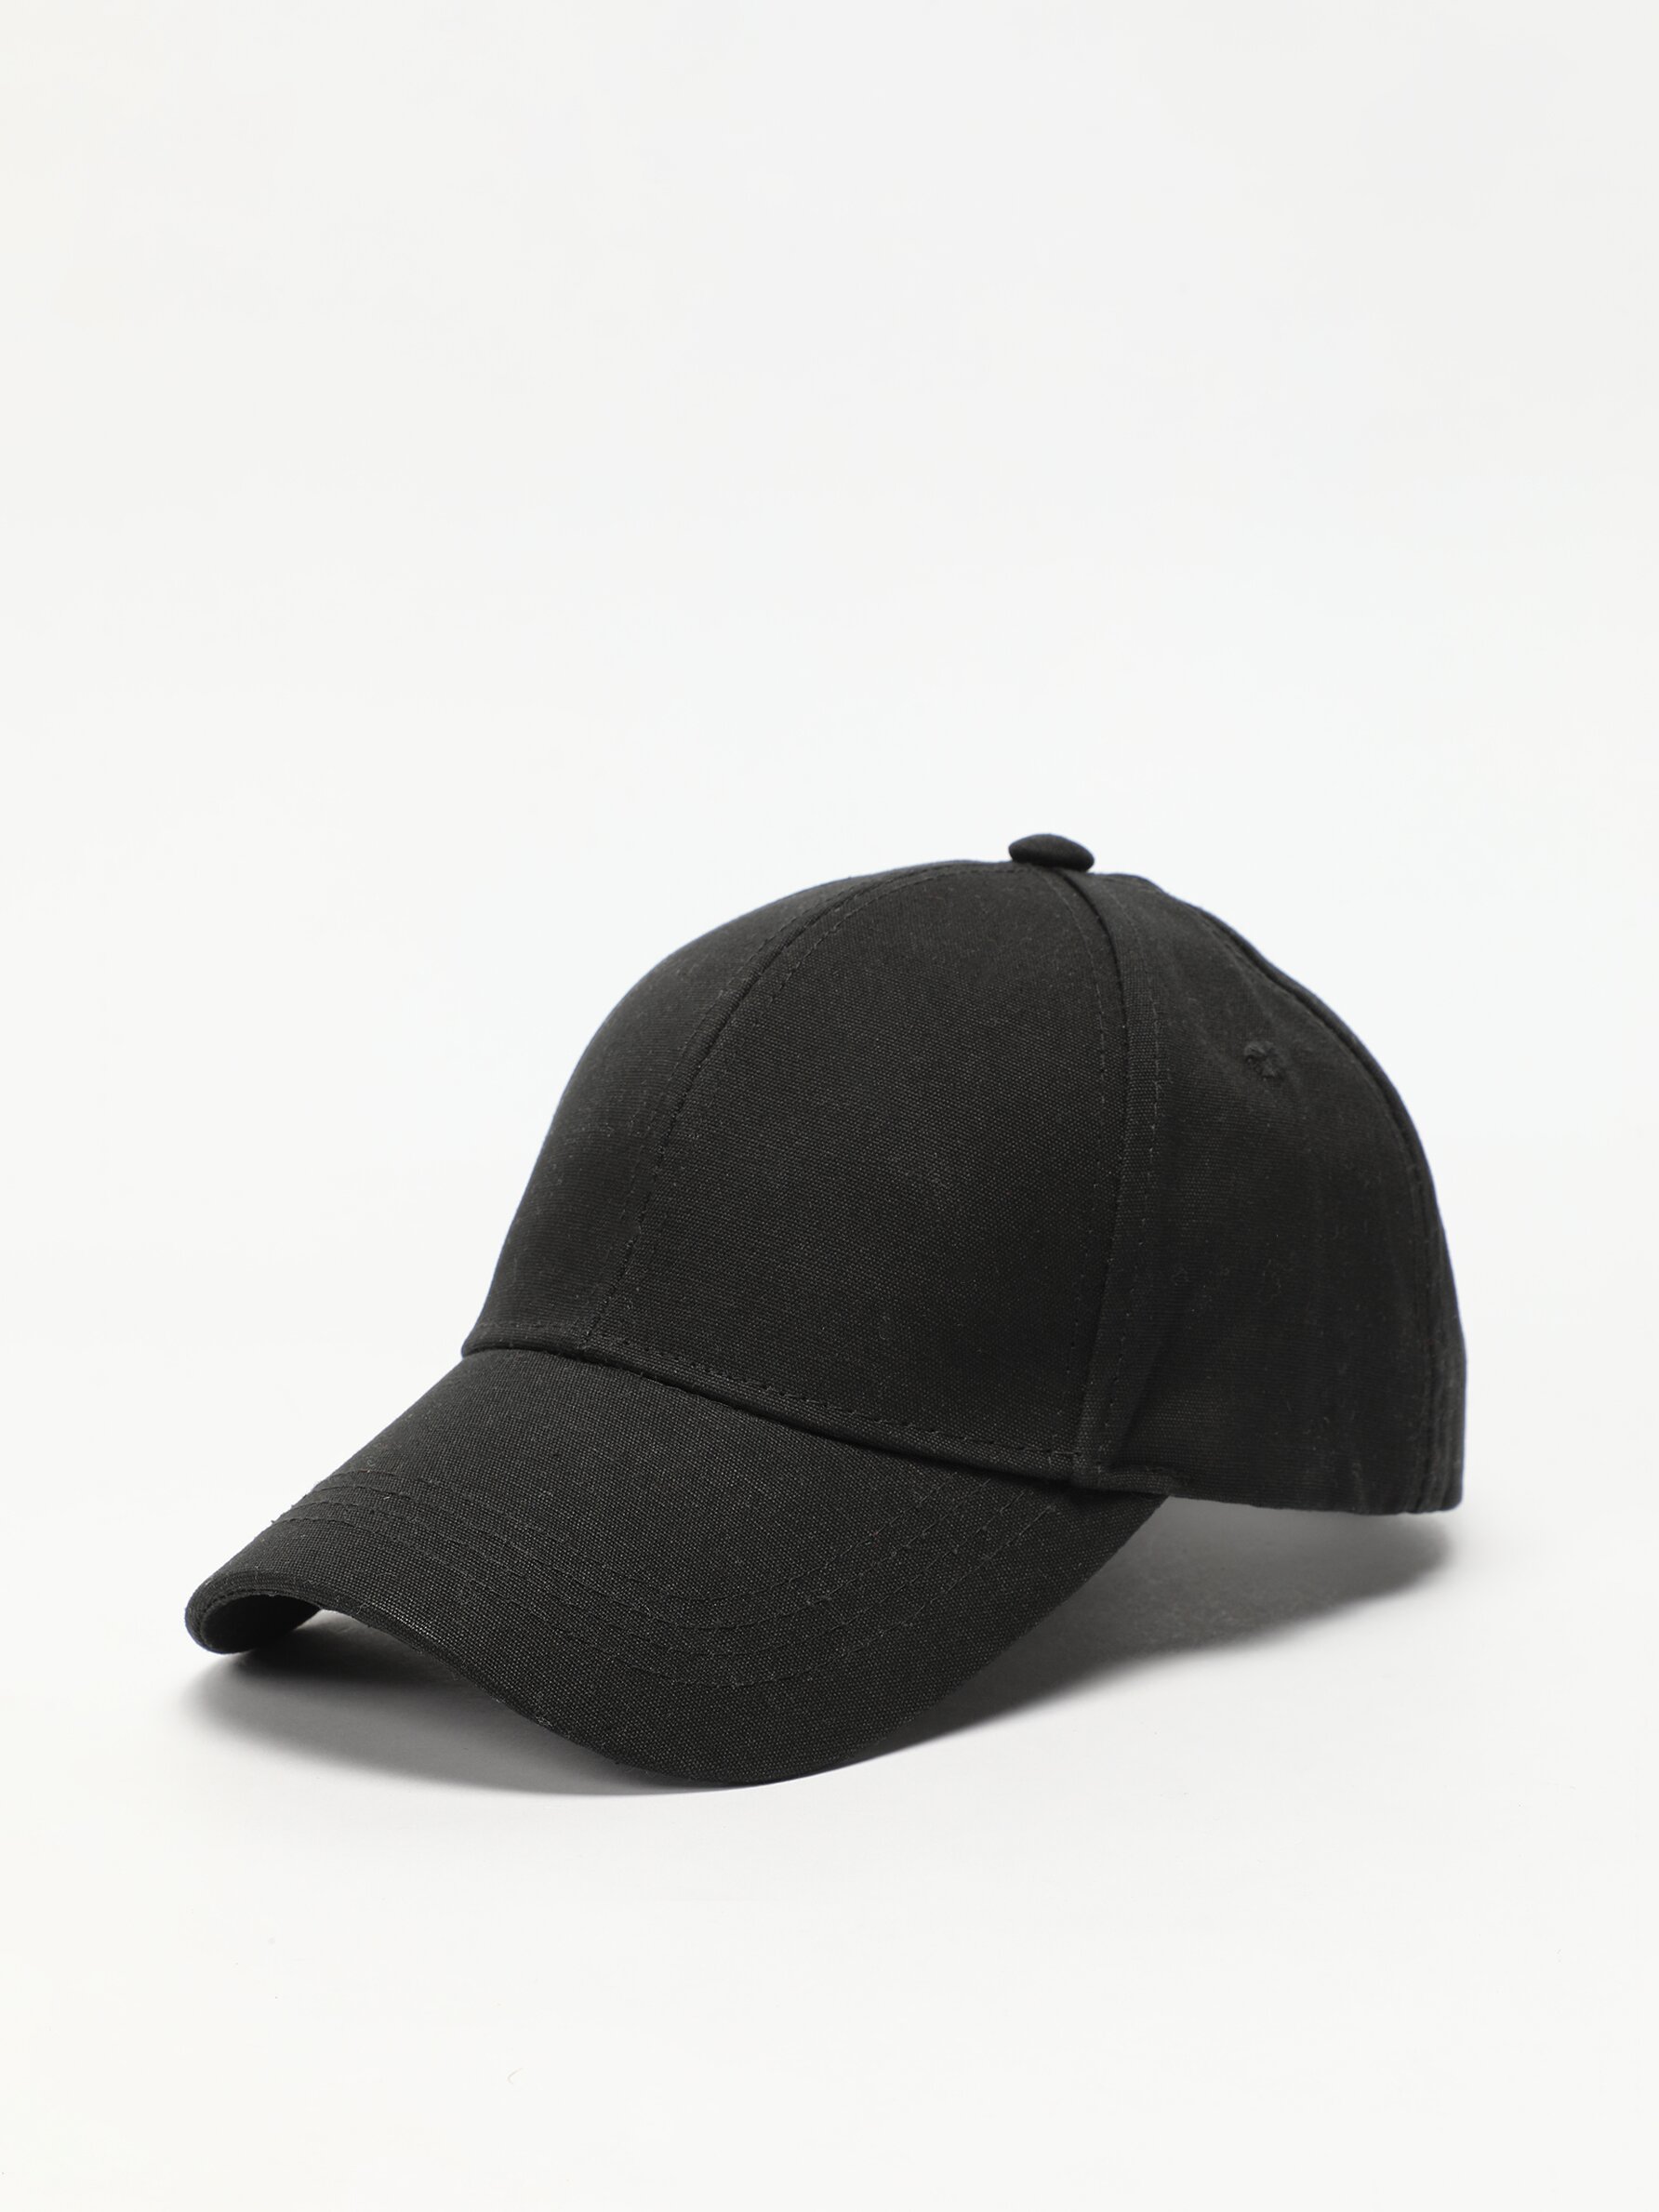 CAP - Various